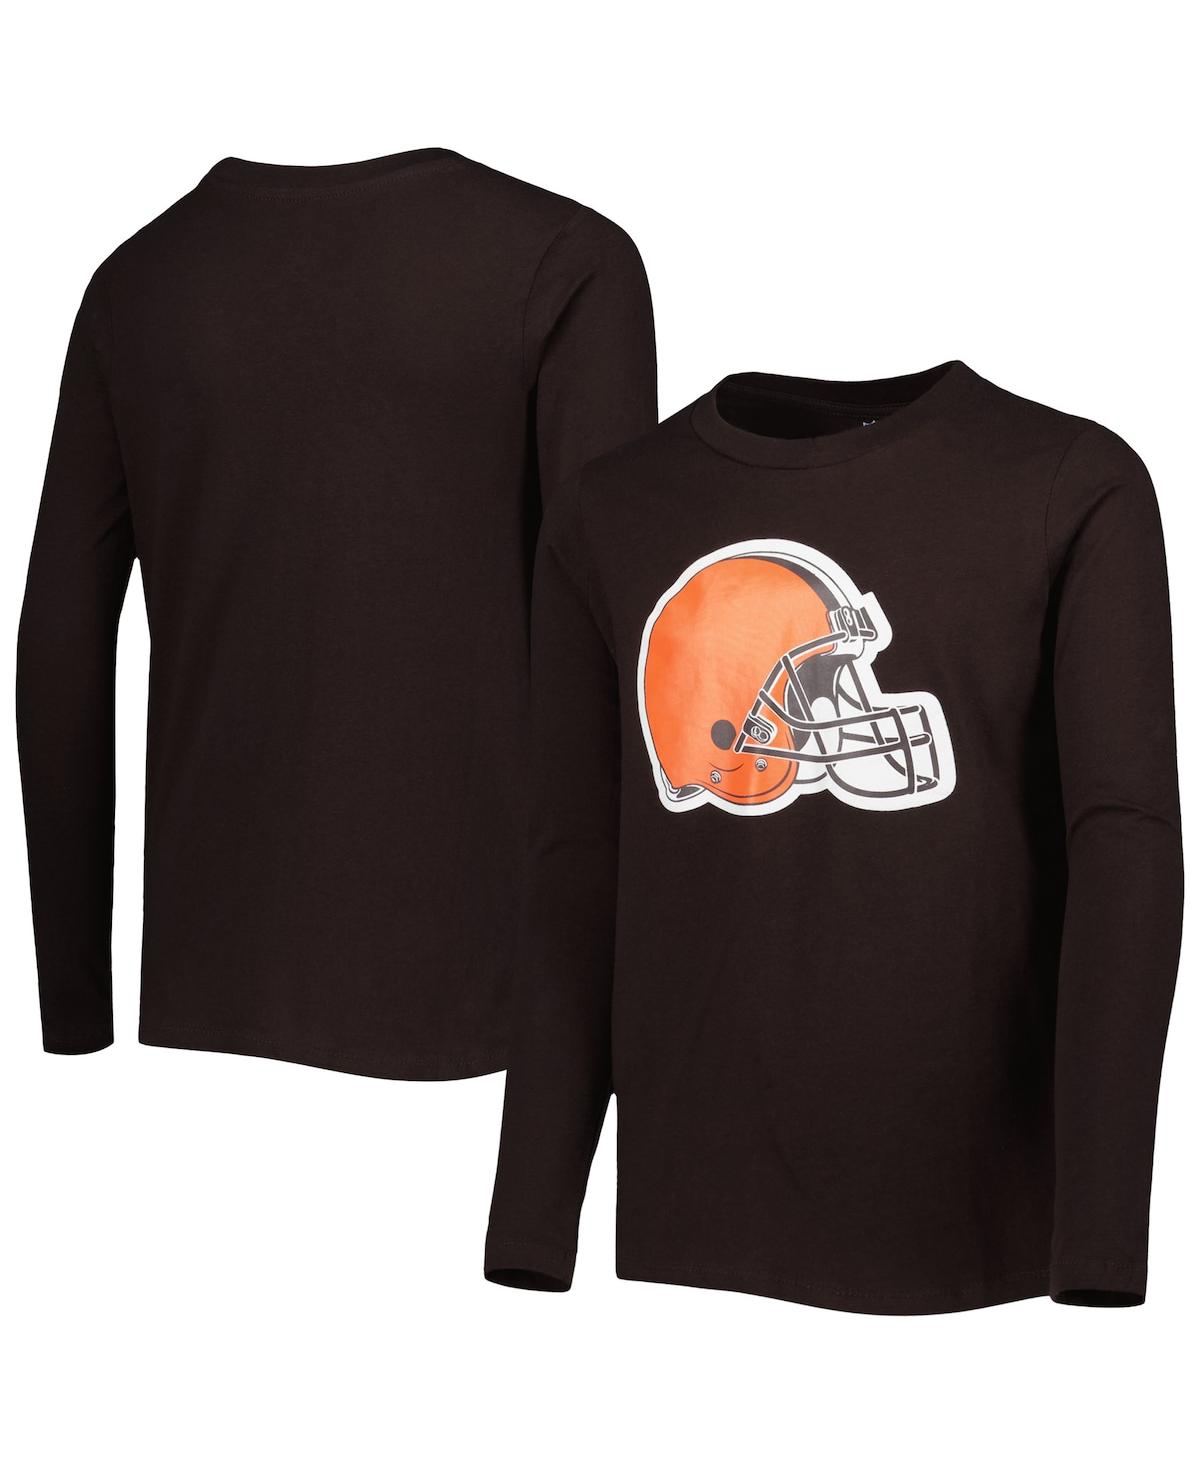 Outerstuff Kids' Big Boys Brown Cleveland Browns Team Logo Long Sleeve T-shirt